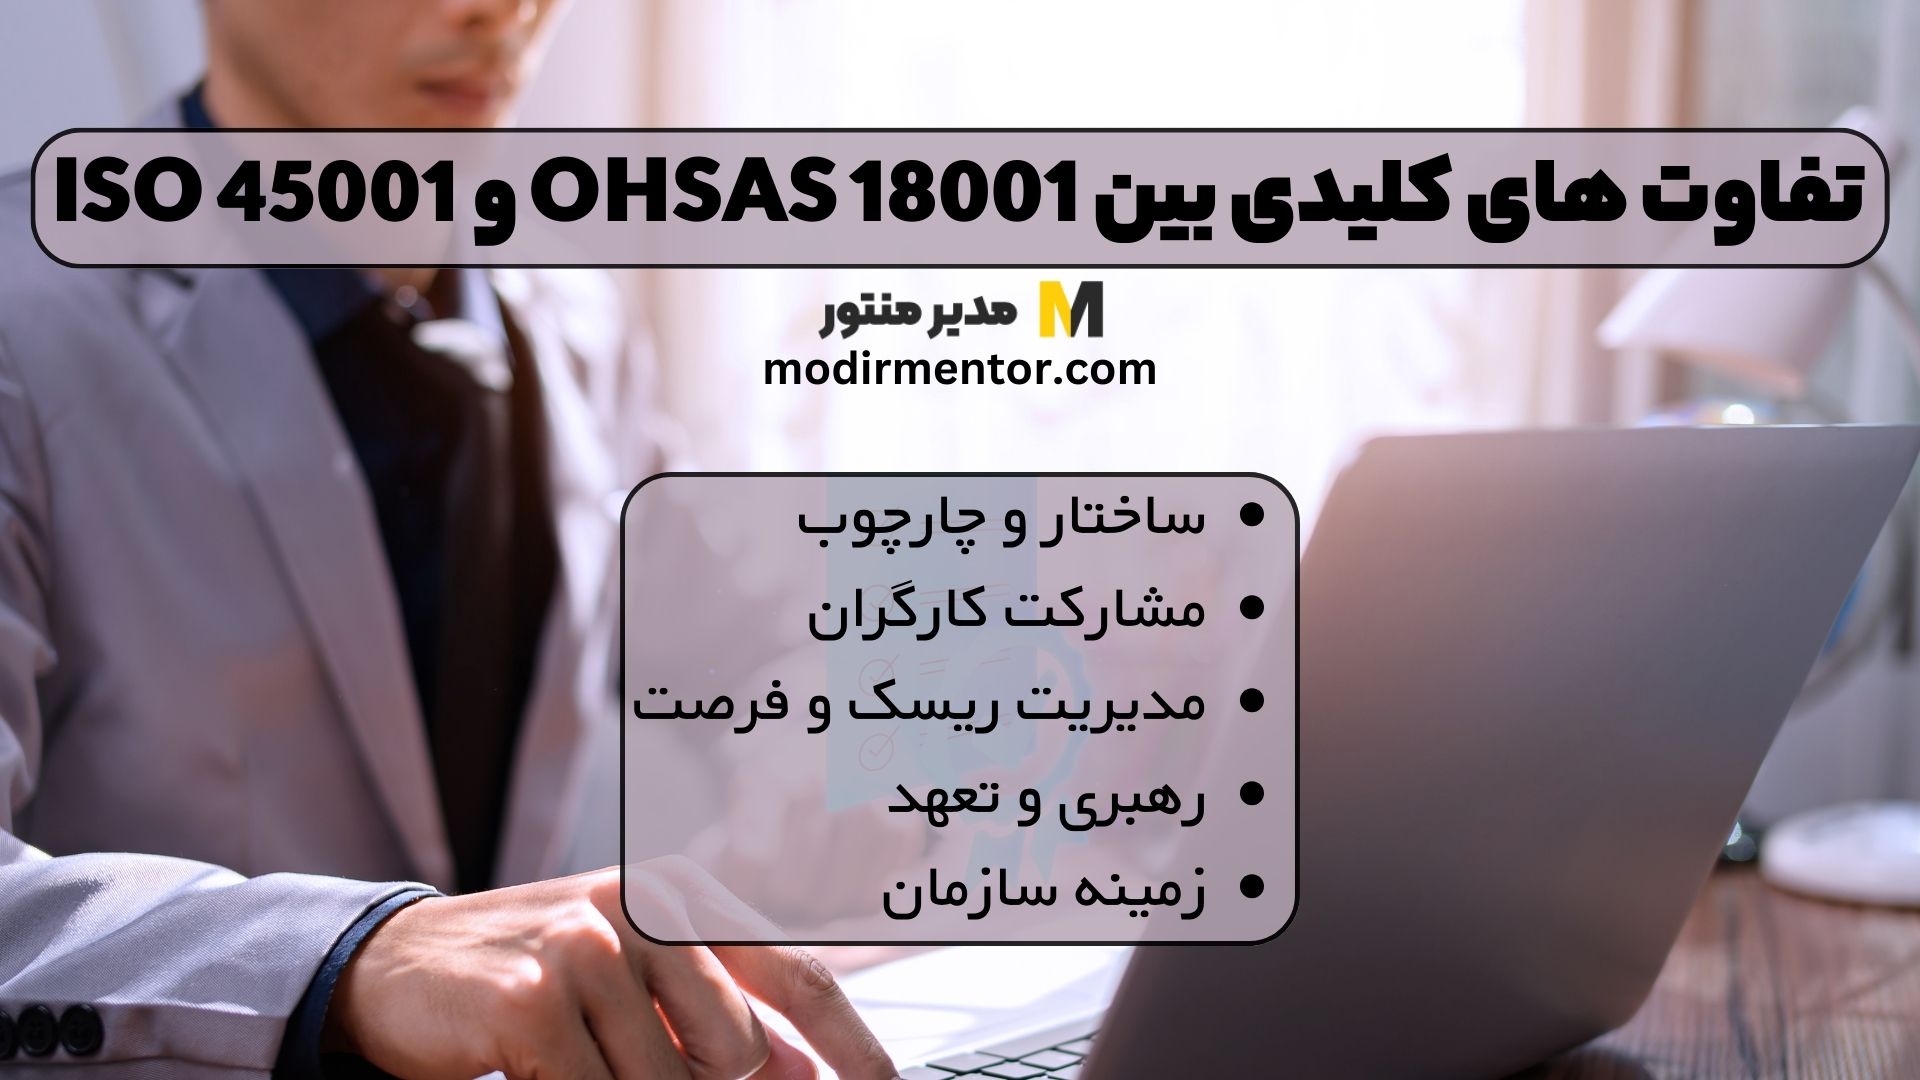 تفاوت های کلیدی بین OHSAS 18001 و ISO 45001